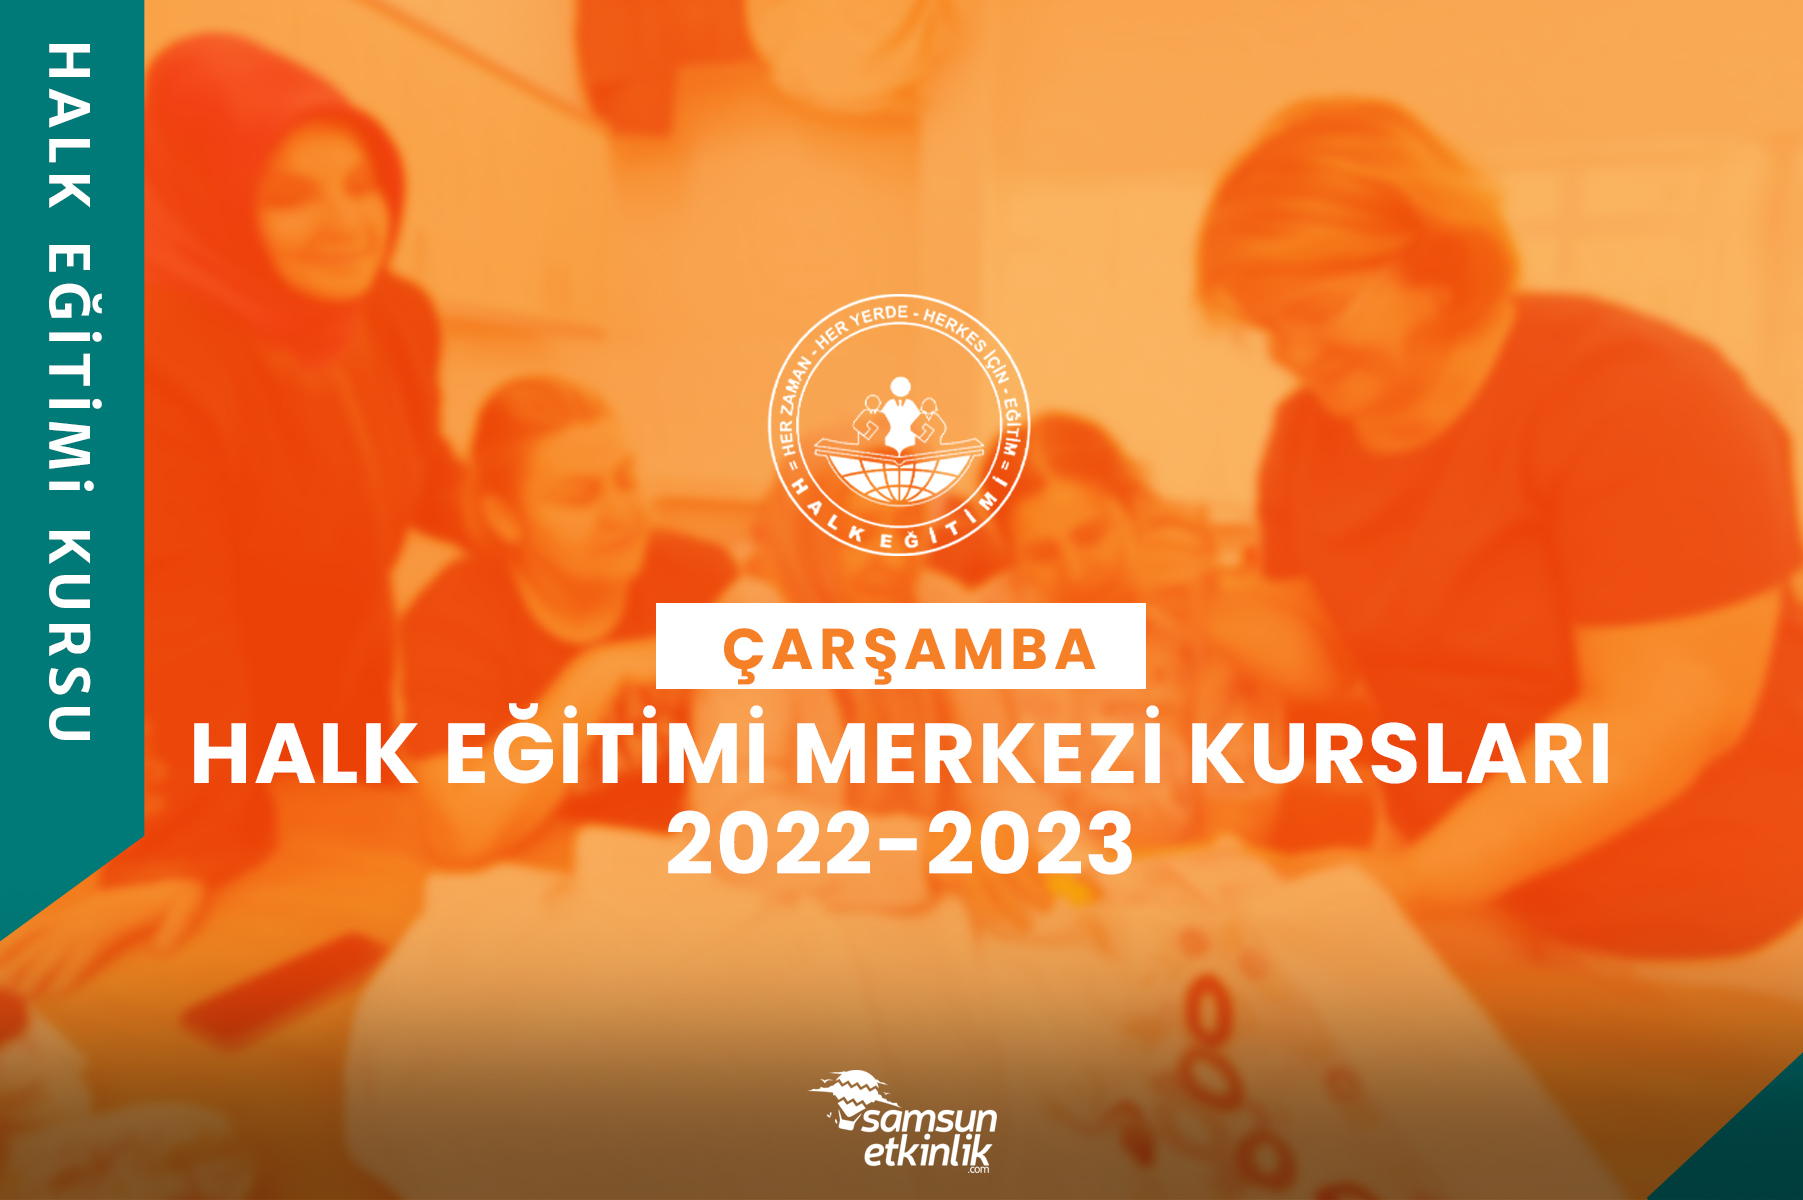 Samsun Çarşamba Halk Eğitimi Merkezi Kursları 2022-2023